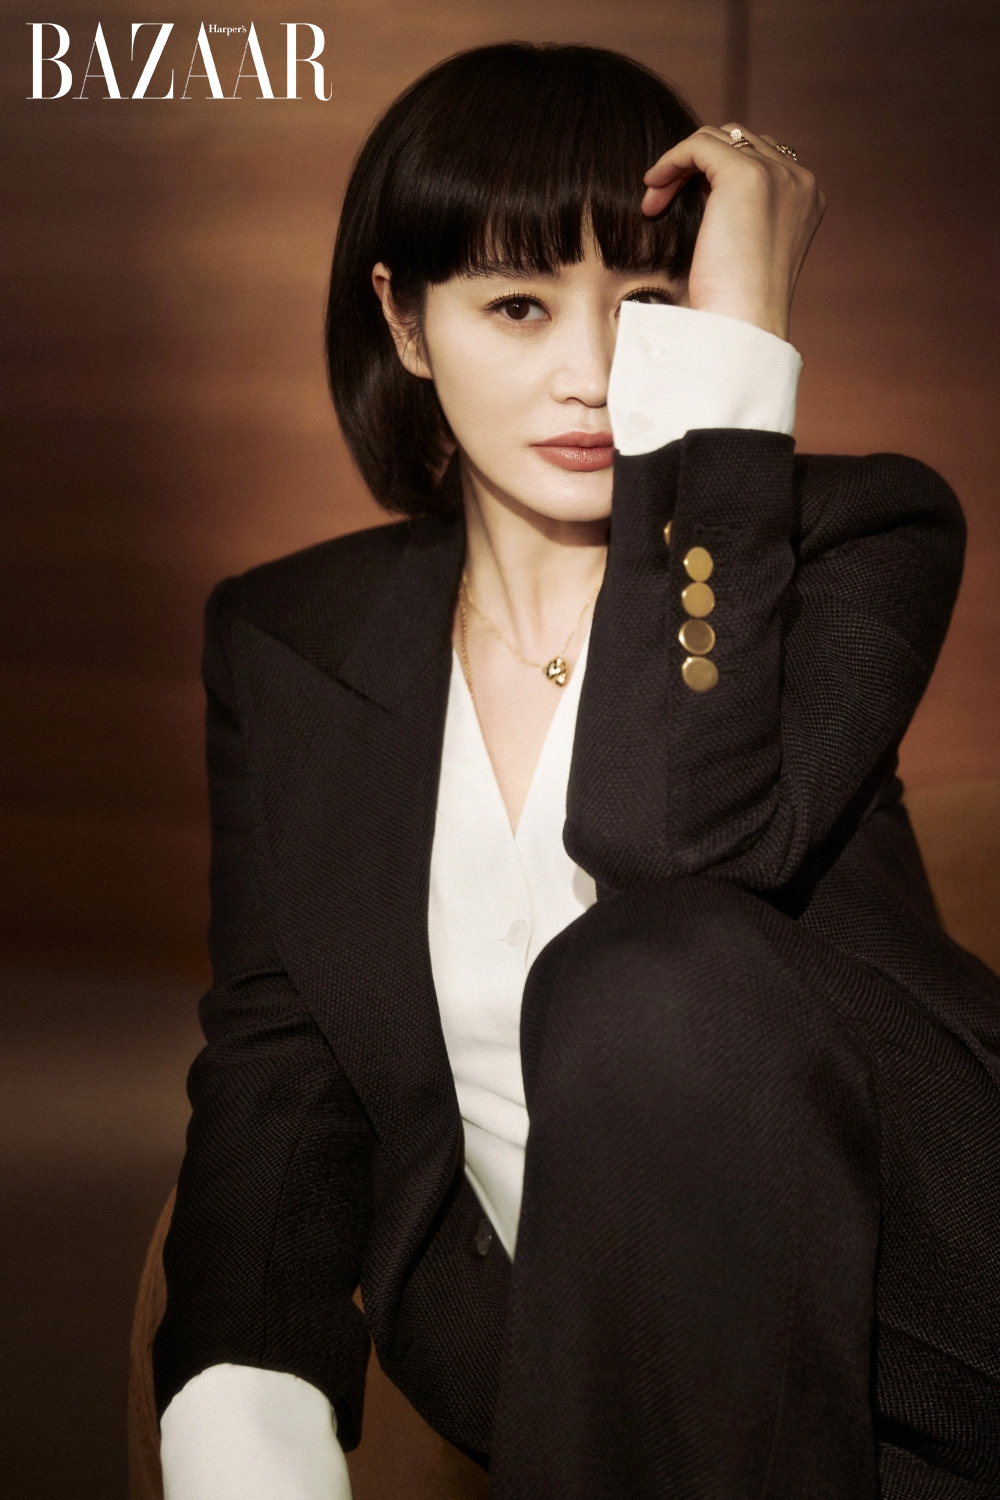 Kim Hye Soo: Với ngoại hình xinh đẹp và tài năng diễn xuất xuất sắc, Kim Hye Soo chắc chắn sẽ làm say mê các fan hâm mộ điện ảnh trên toàn thế giới. Hãy để mình được lấn sân vào thế giới phim ảnh và ngắm ảnh của cô nàng hot girl của làng điện ảnh xứ Hàn nhé!